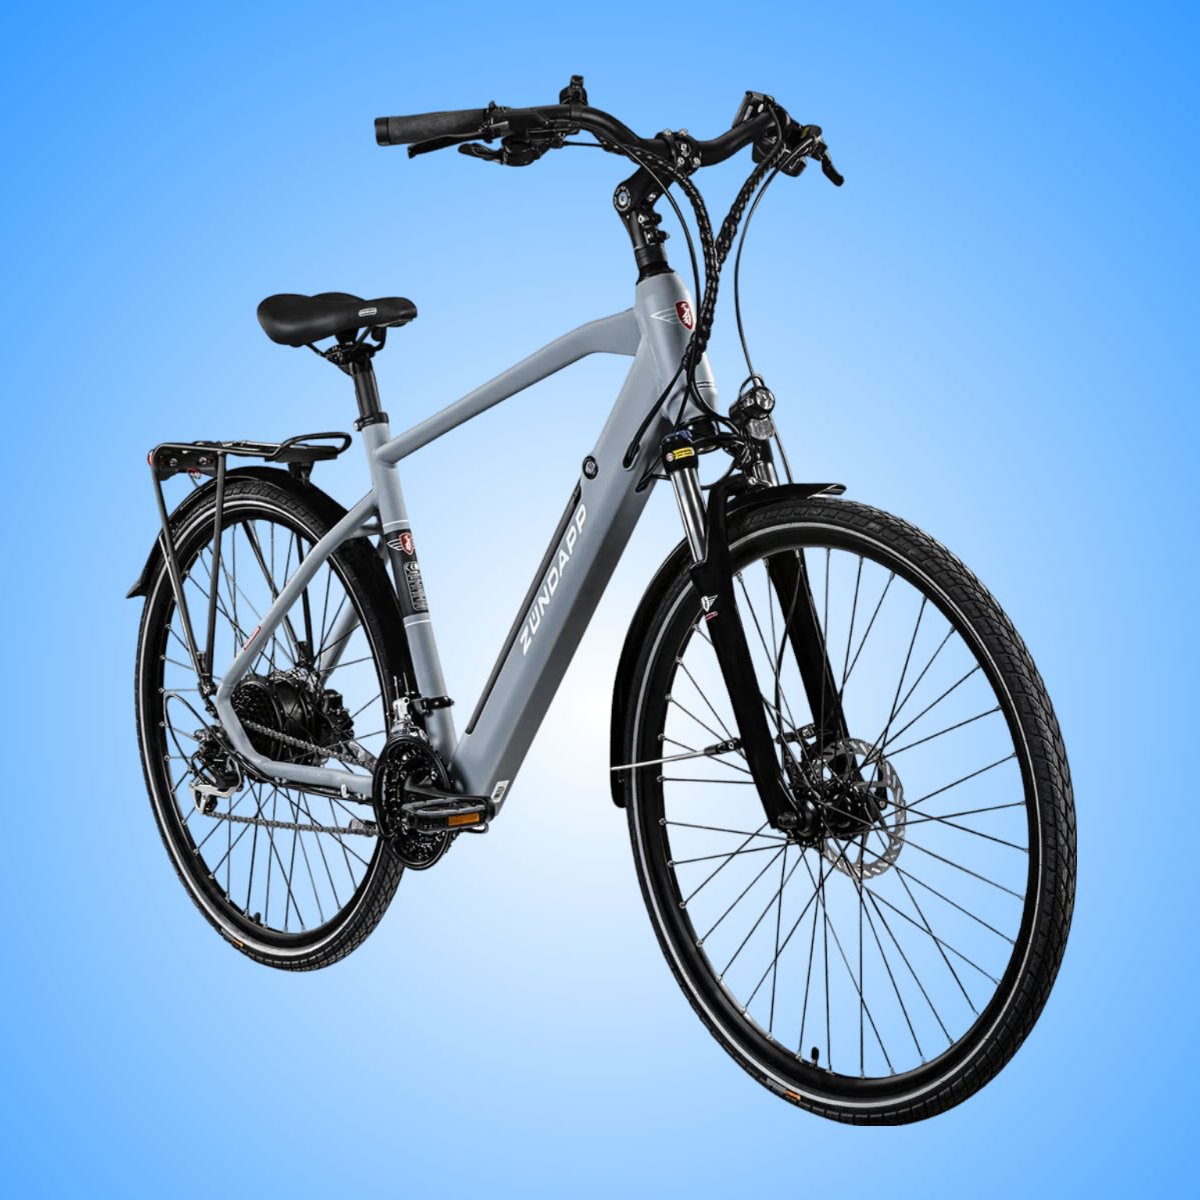 Lieferbare Zündapp E-Bikes für 799 Euro: Tiefpreis-Angebot bei Lidl